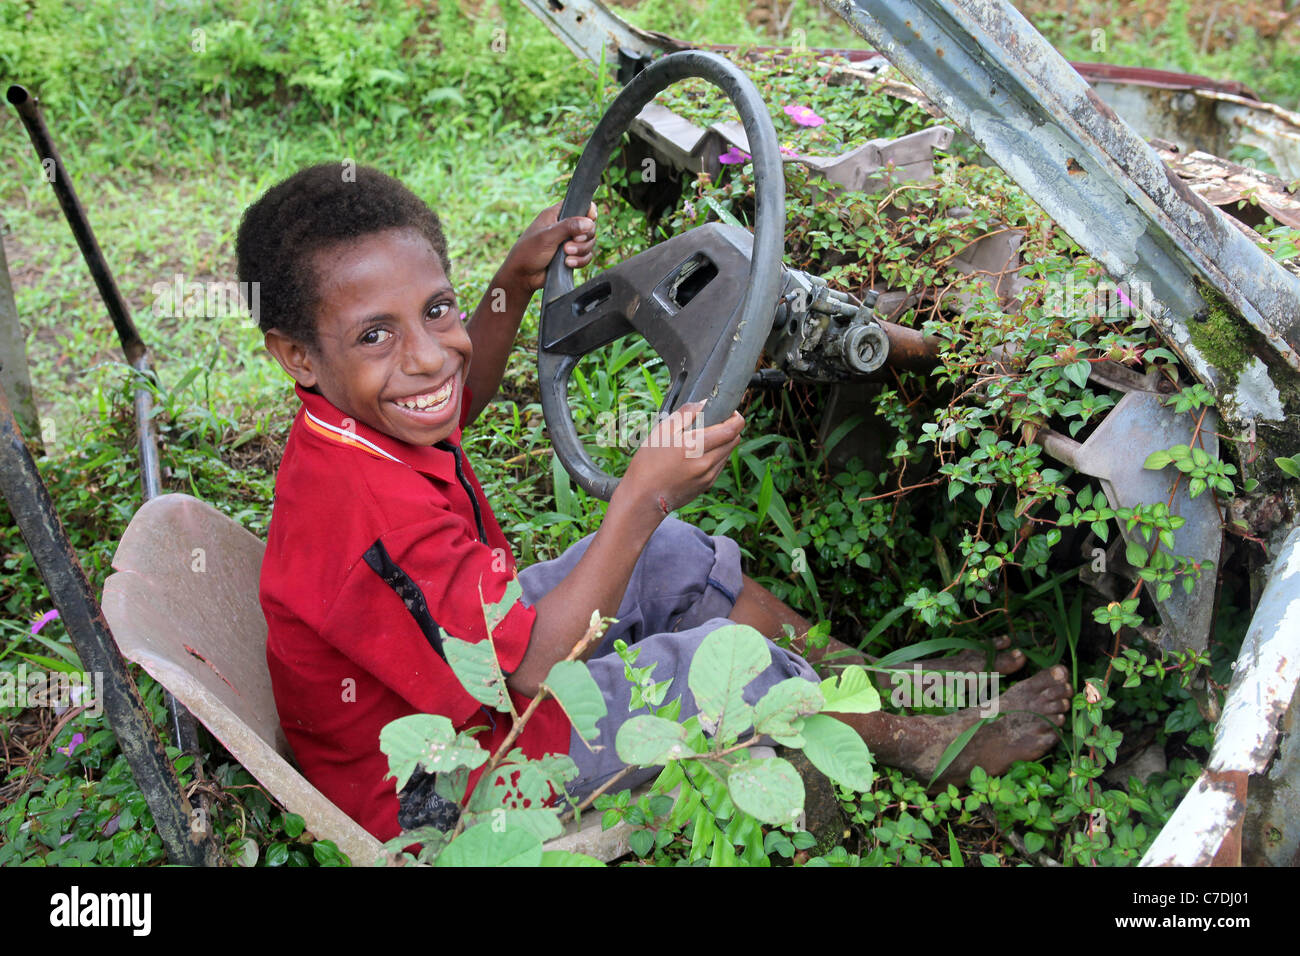 Garçon dans une carcasse de voiture rouillée envahie, Papouasie Nouvelle Guinée Banque D'Images